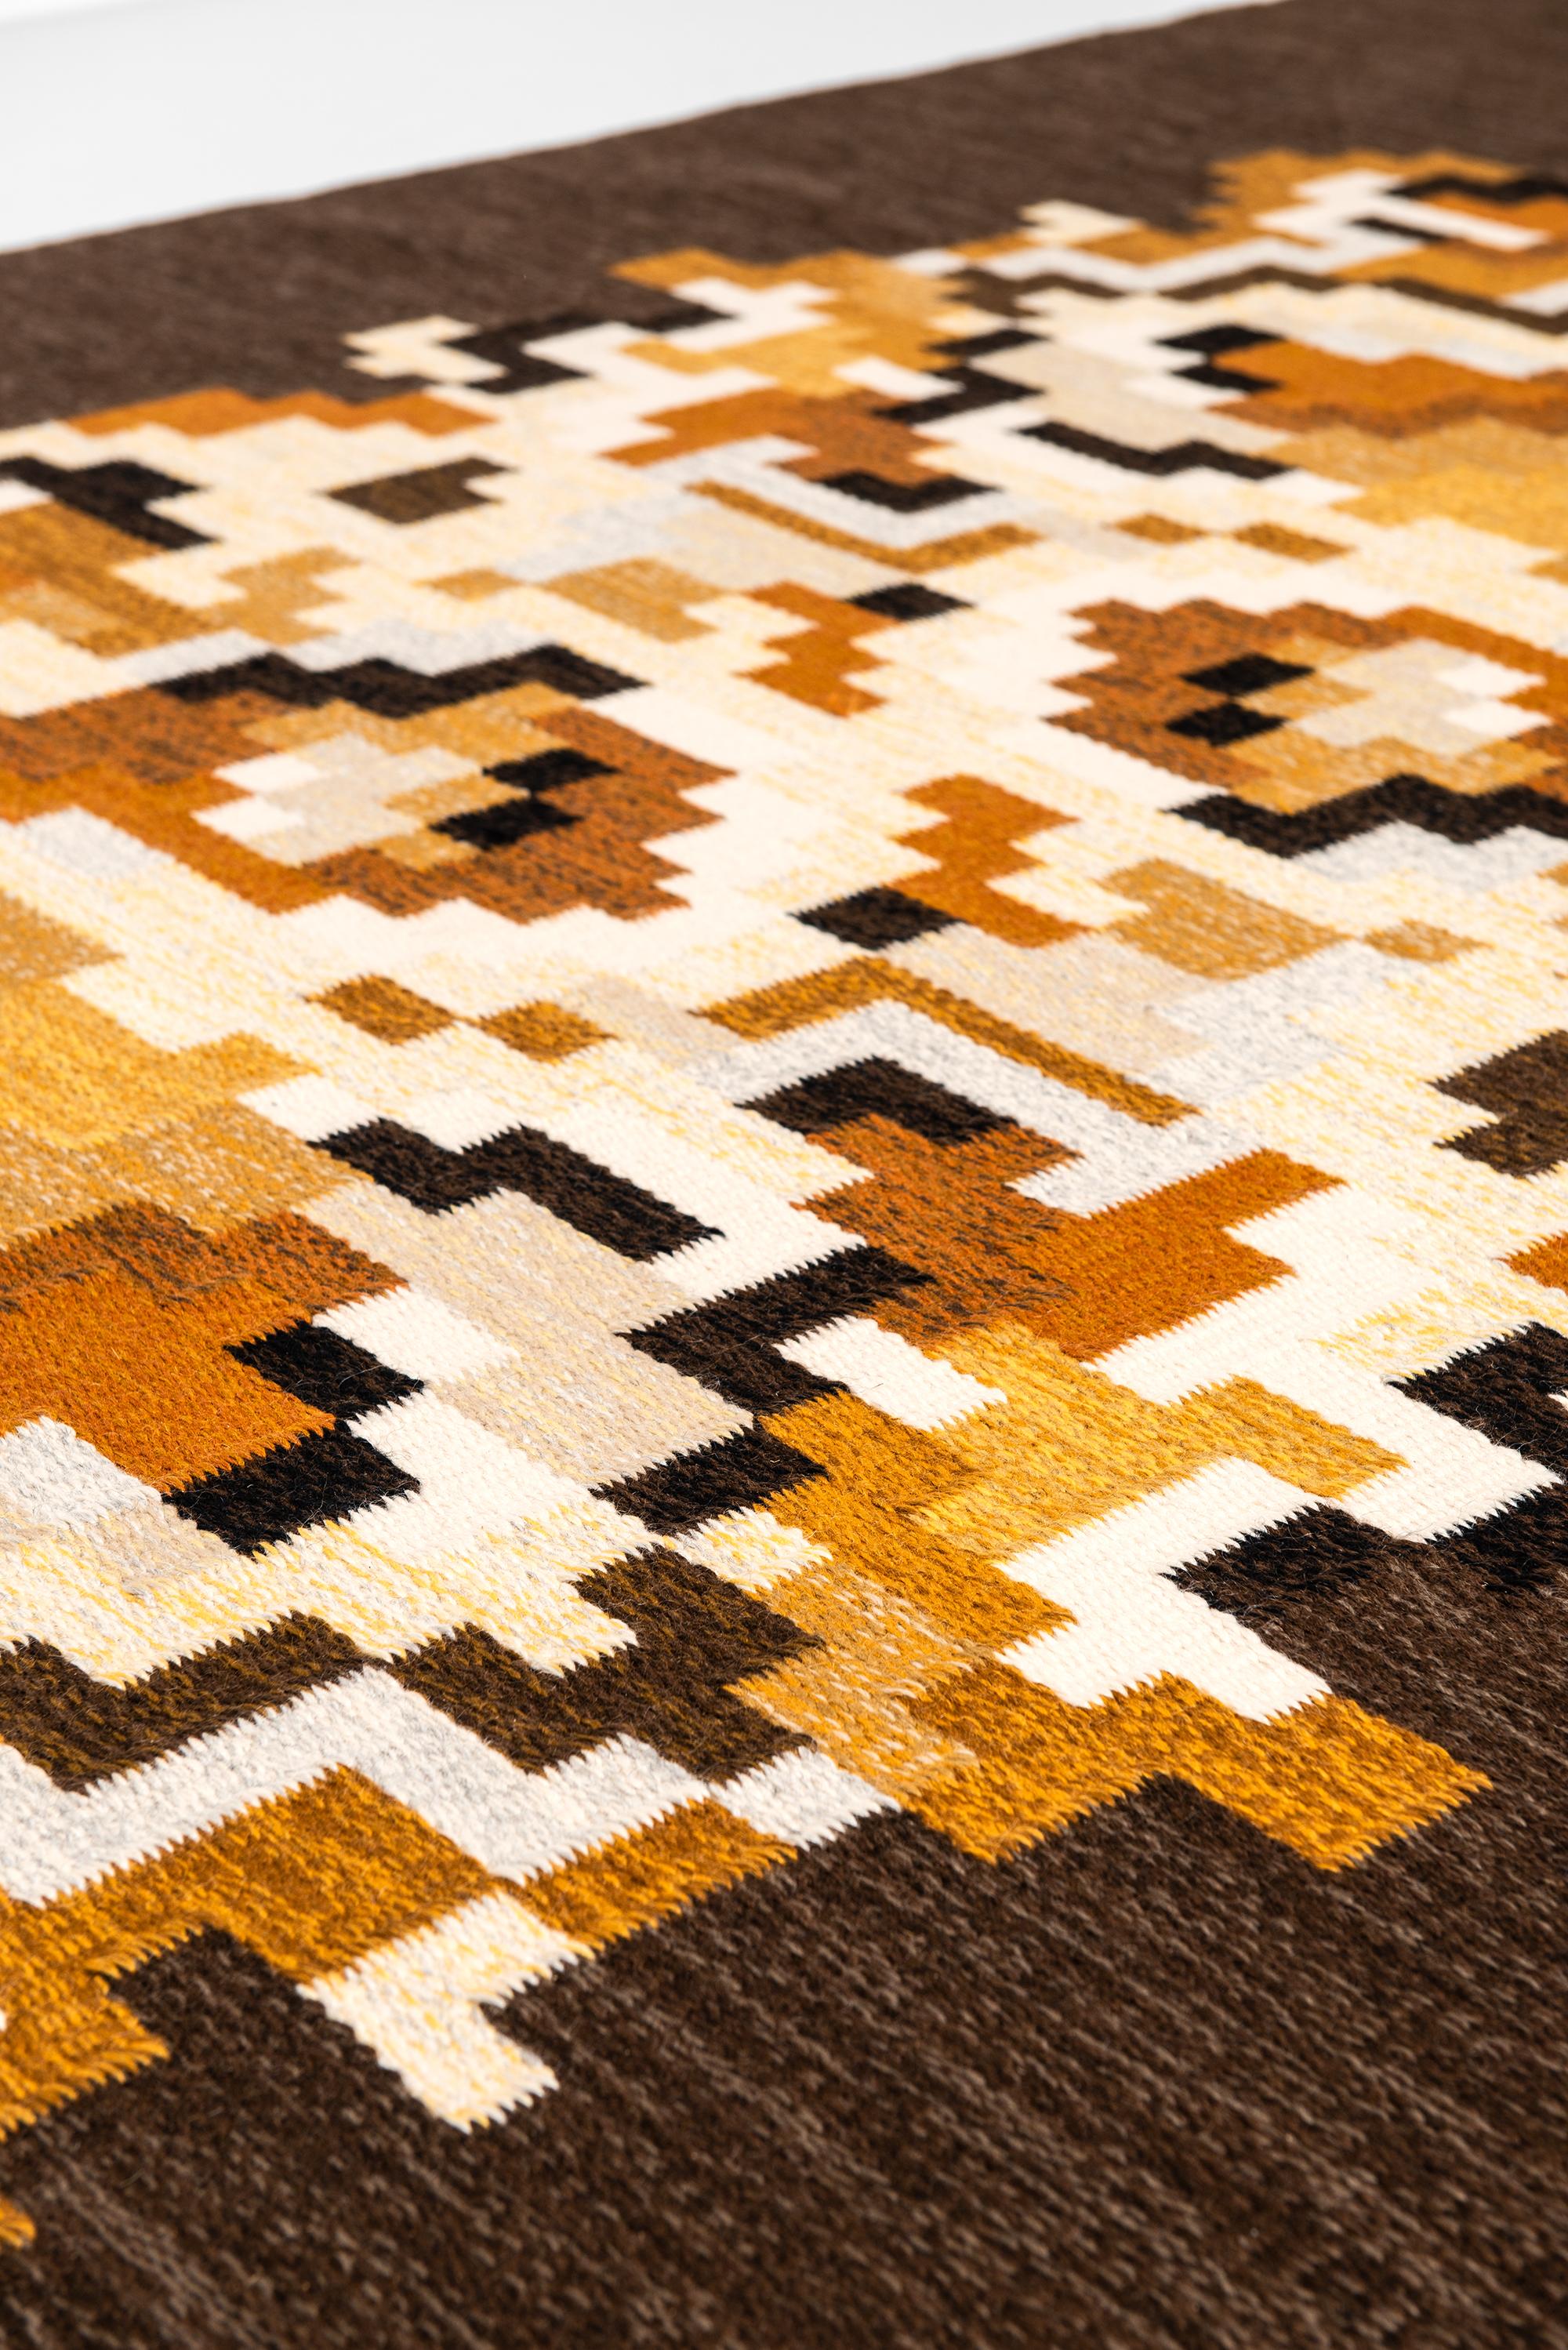 Rare flat-weave carpet model Korall brun designed by Erik Lundberg. Produced by Vävaregården in Sweden.